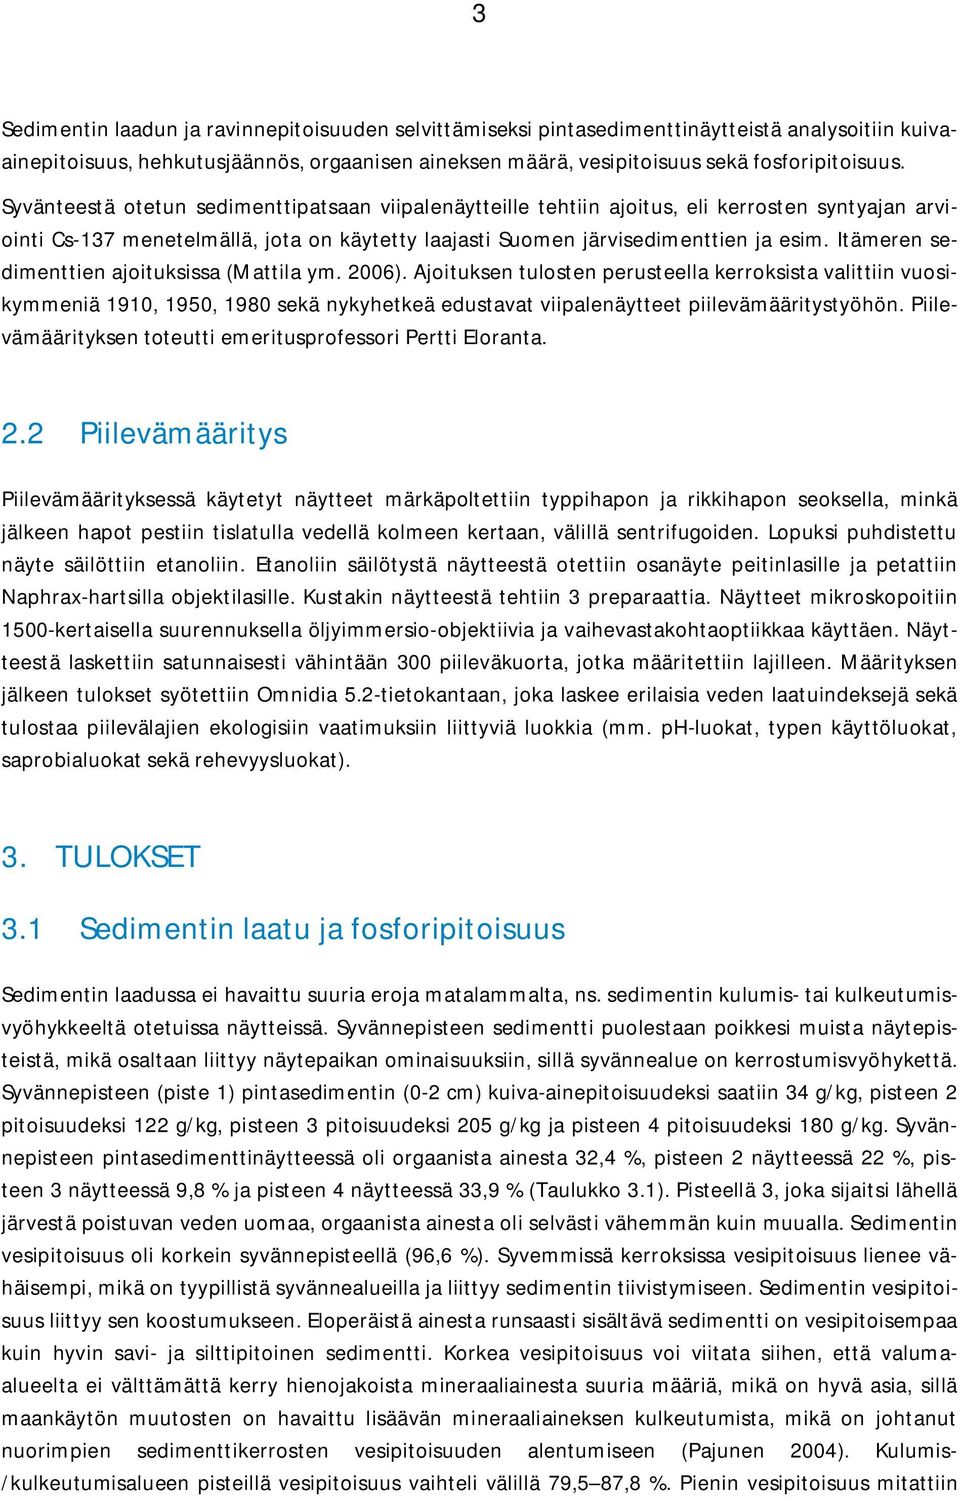 Itämeren sedimenttien ajoituksissa (Mattila ym. 2006).